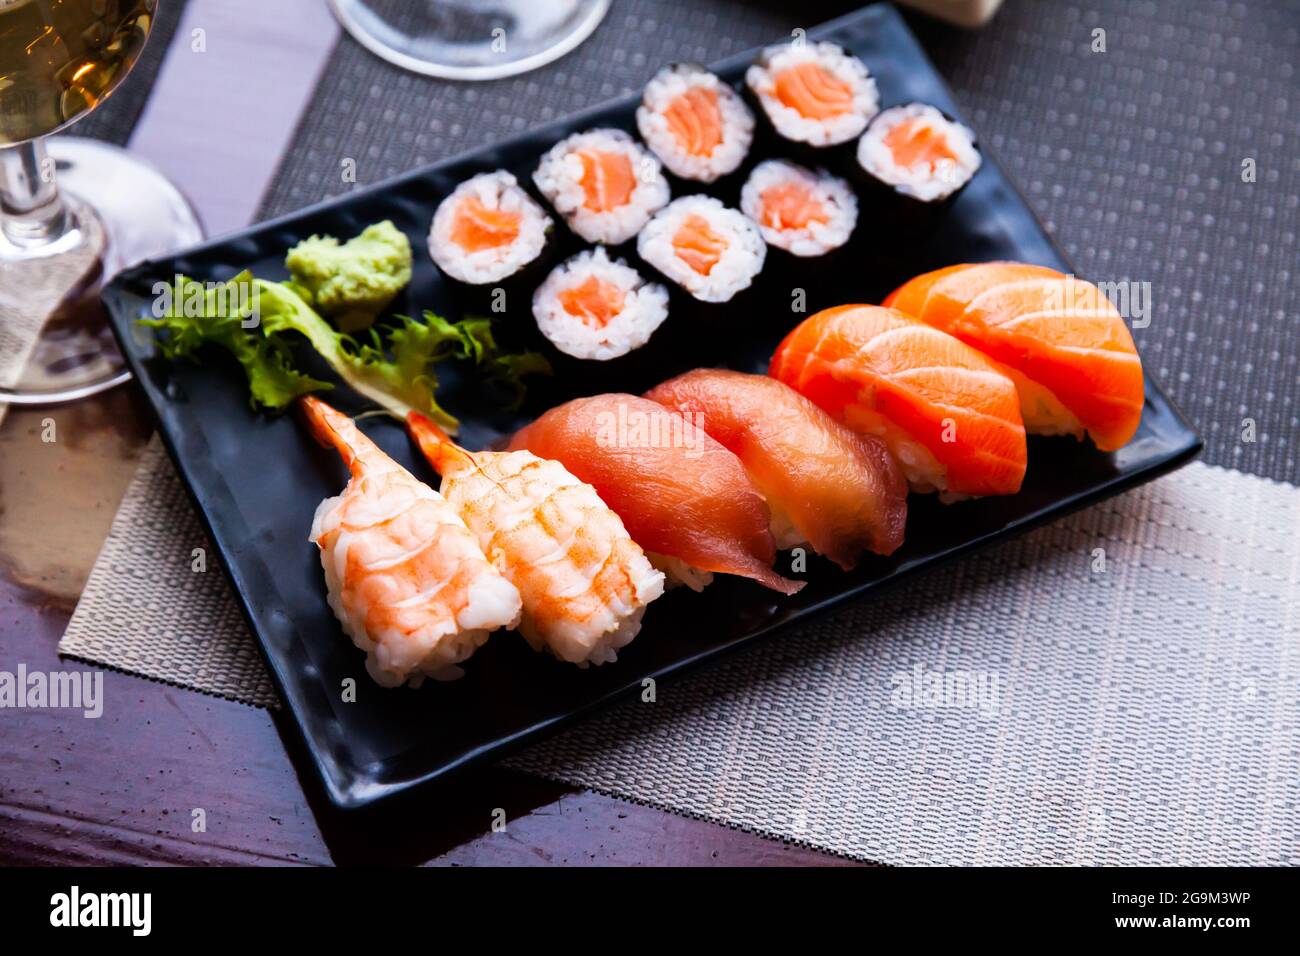 Divers sushis servis sur une assiette noire. La nourriture japonaise, personne Banque D'Images